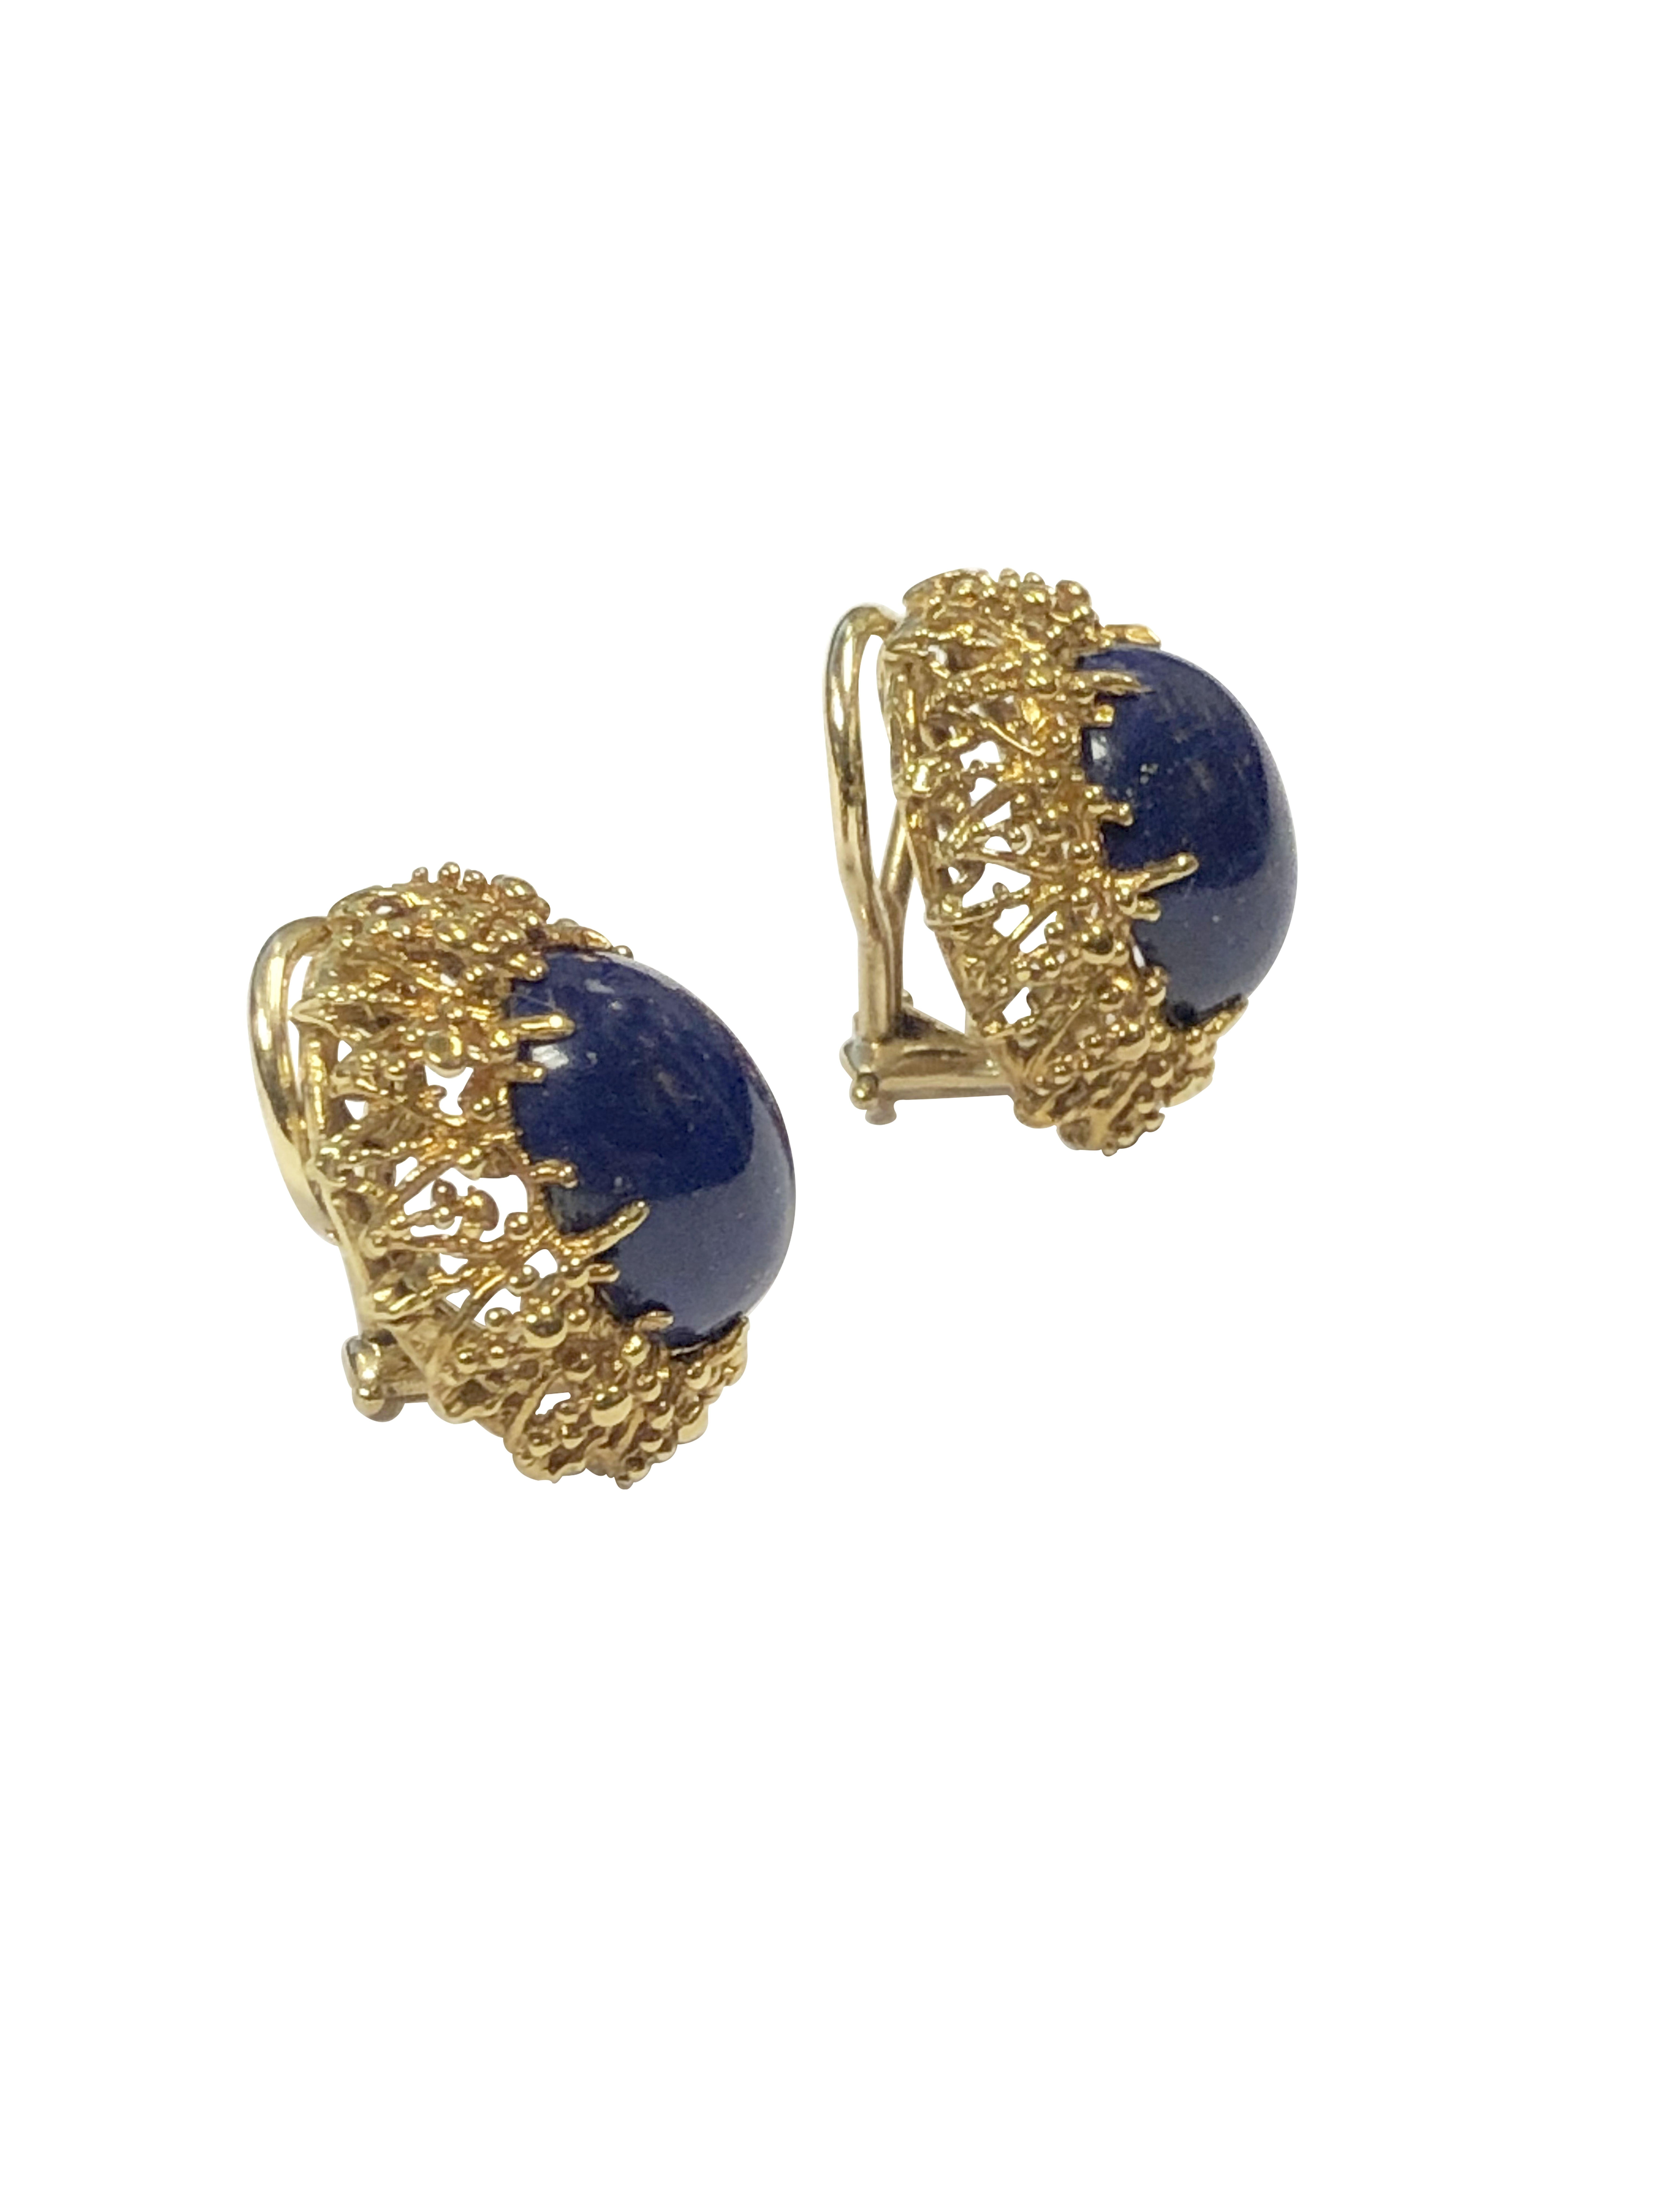 Circa 1990 Tiffany & Company 18K Gelbgold Ohrringe,  in einem modernistischen Stil die ovalen Ohrringe messen 3/4 X 3/4 Zoll und sind zentral mit einem ovalen Lapis Lazulli von Deep Blue Farbe mit Gold Flecken gesetzt. Mit Omega-Rückseiten, an denen